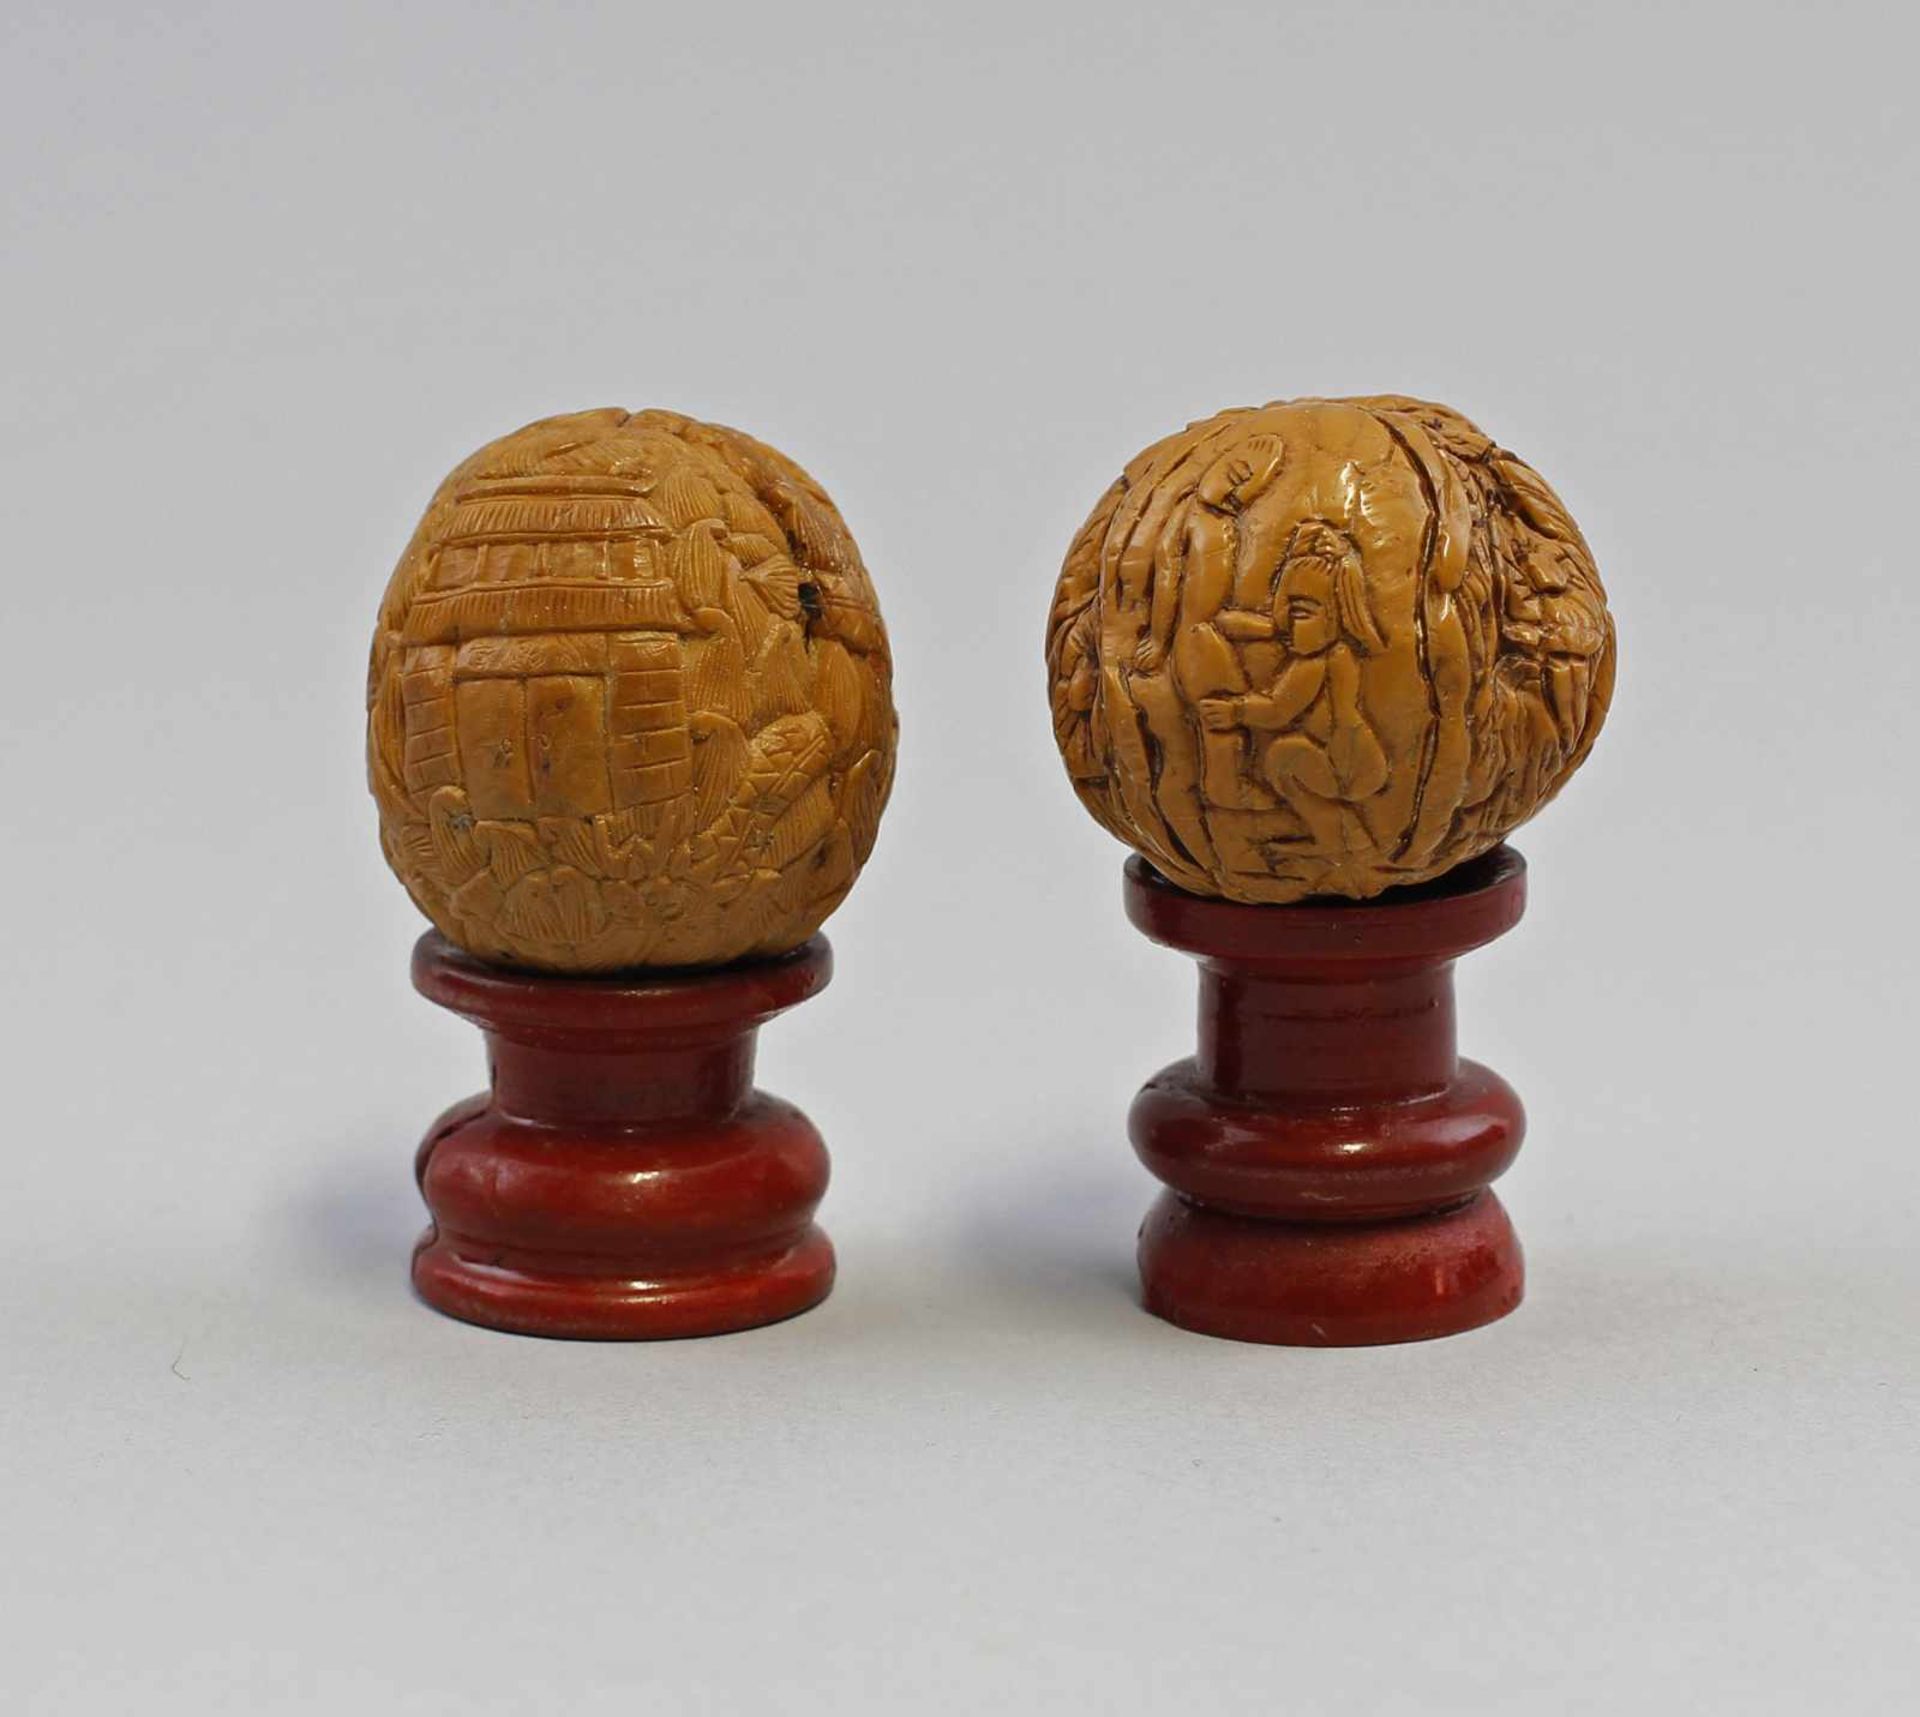 2 beschnitzte Nüsse mit teils erotischer Darstellung: Walnüsse, rundum fein von hand beschnitzt, - Bild 2 aus 3